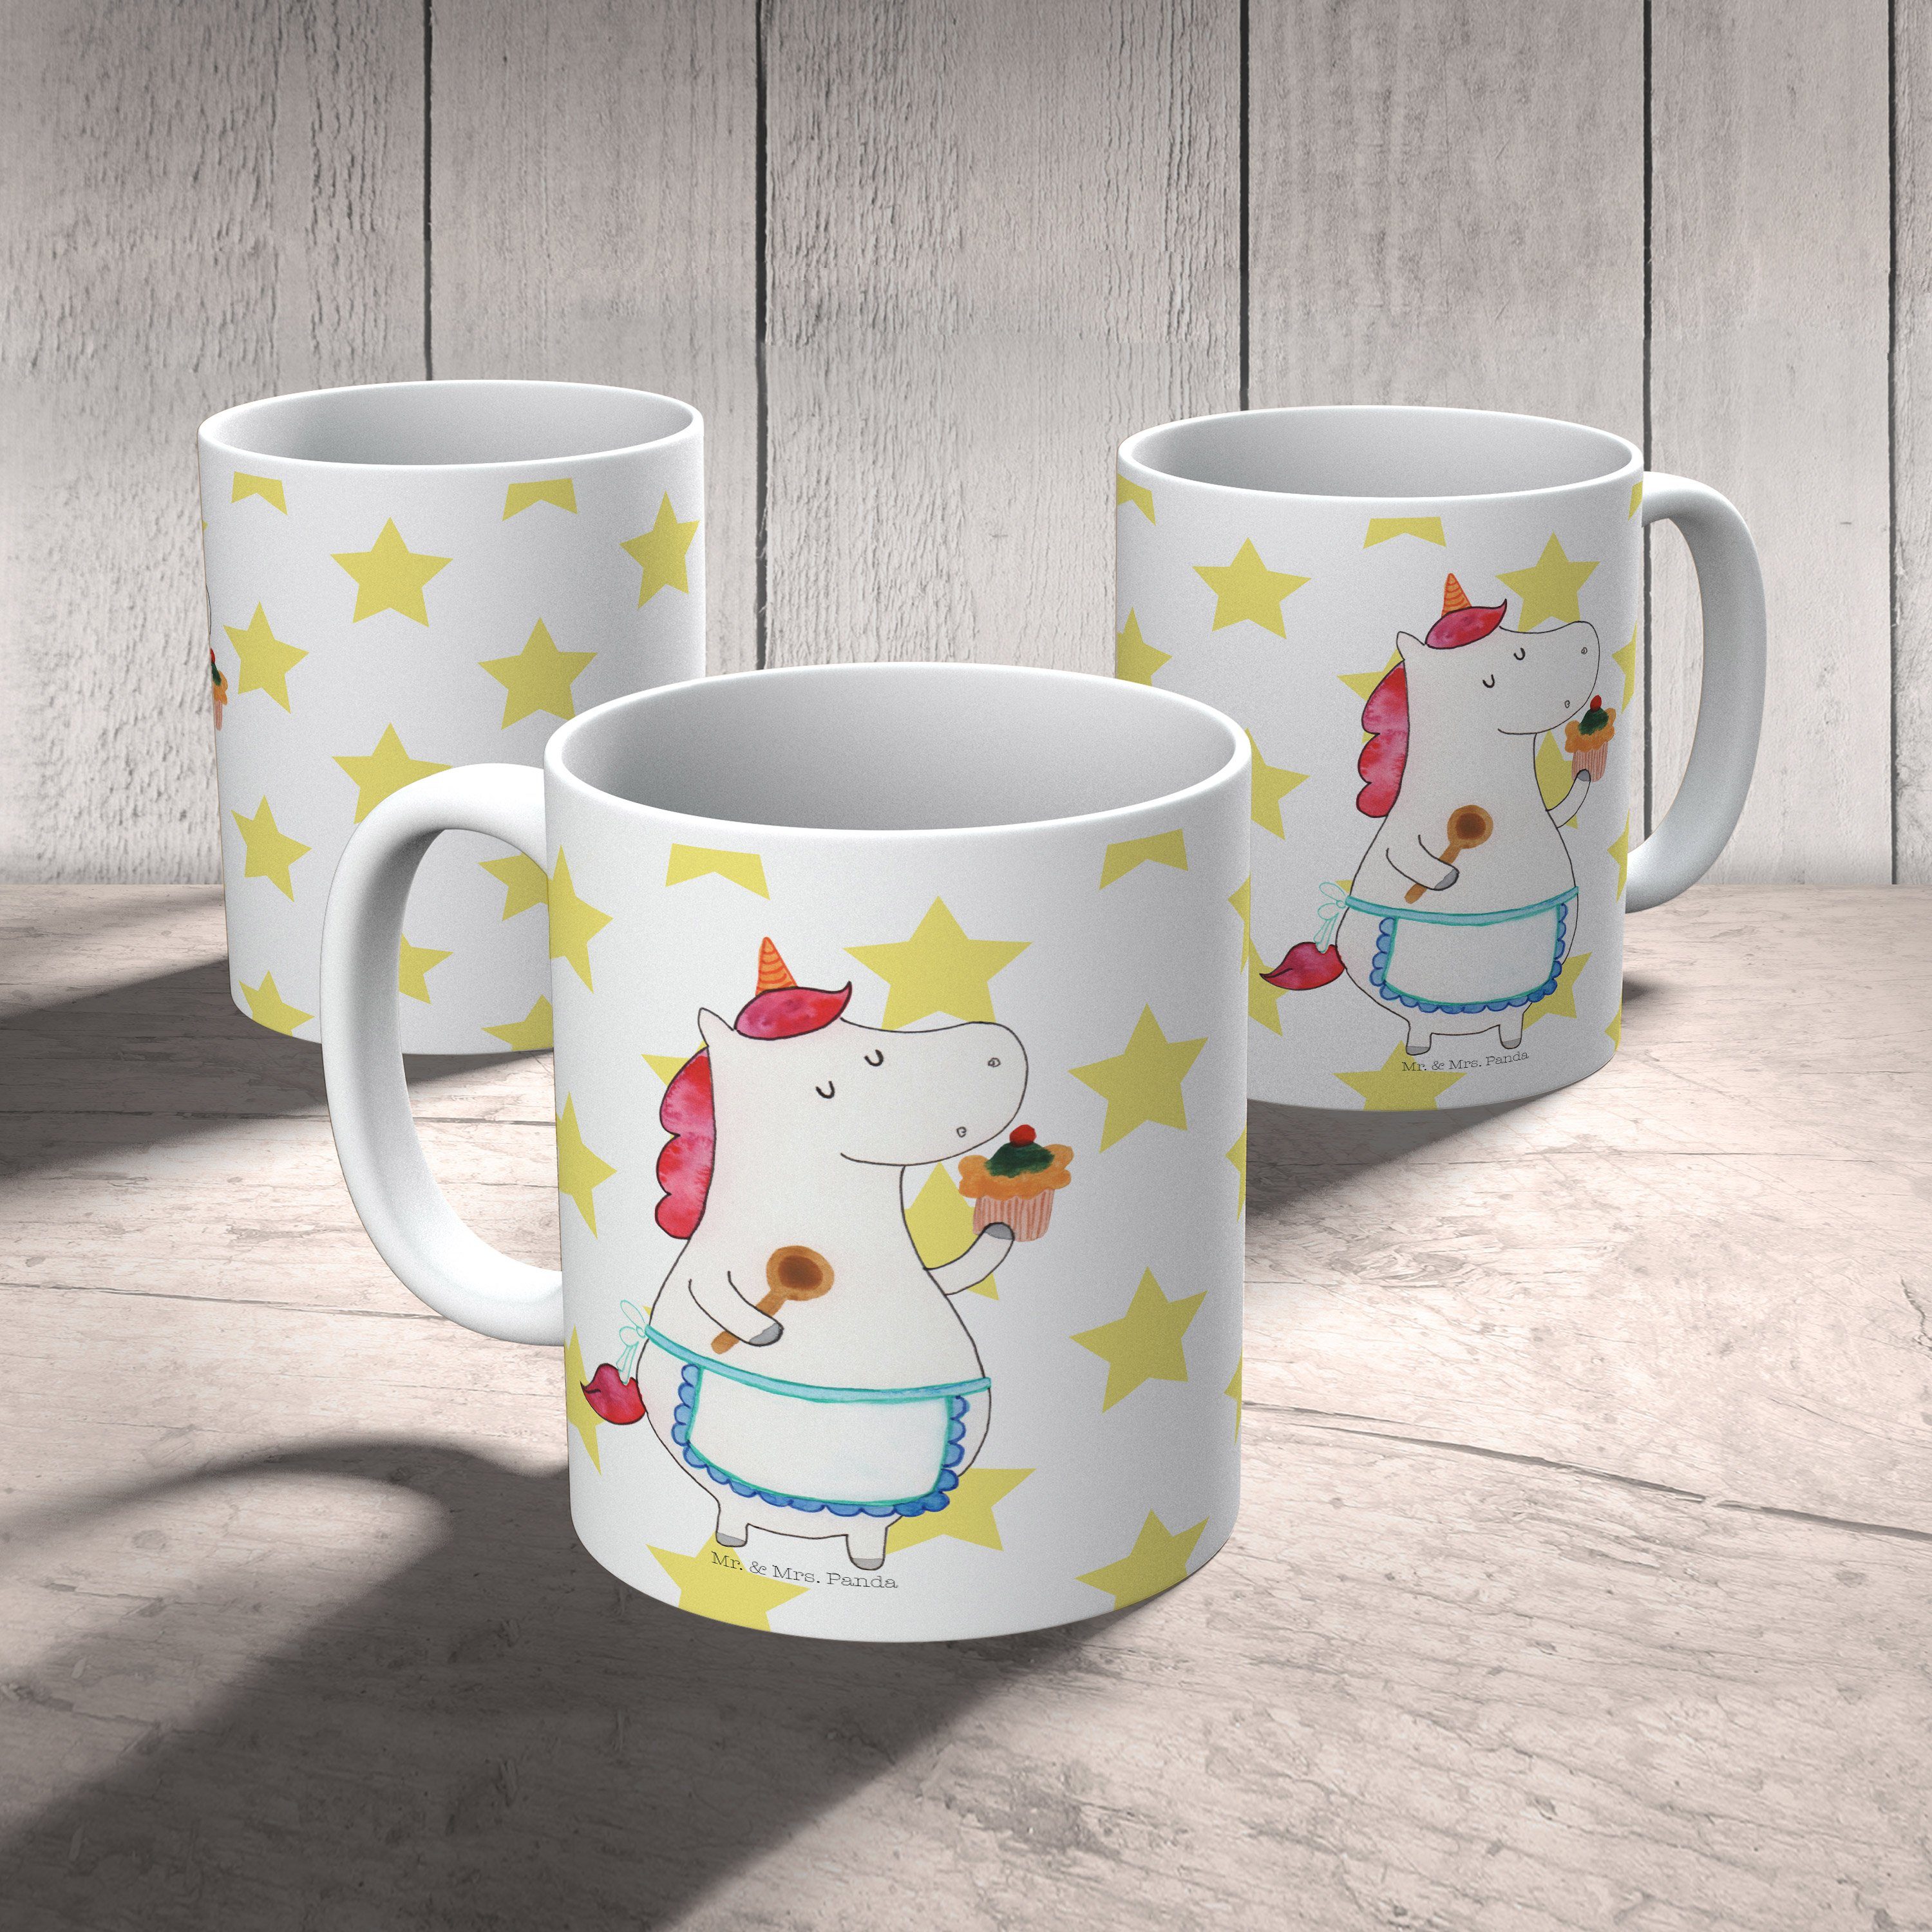 Mr. & Mrs. Panda Tasse Unicorn, Einhorn Küchenfee Keramik Kaffeetas, Motive, Weiß - Geschenk, Tasse 